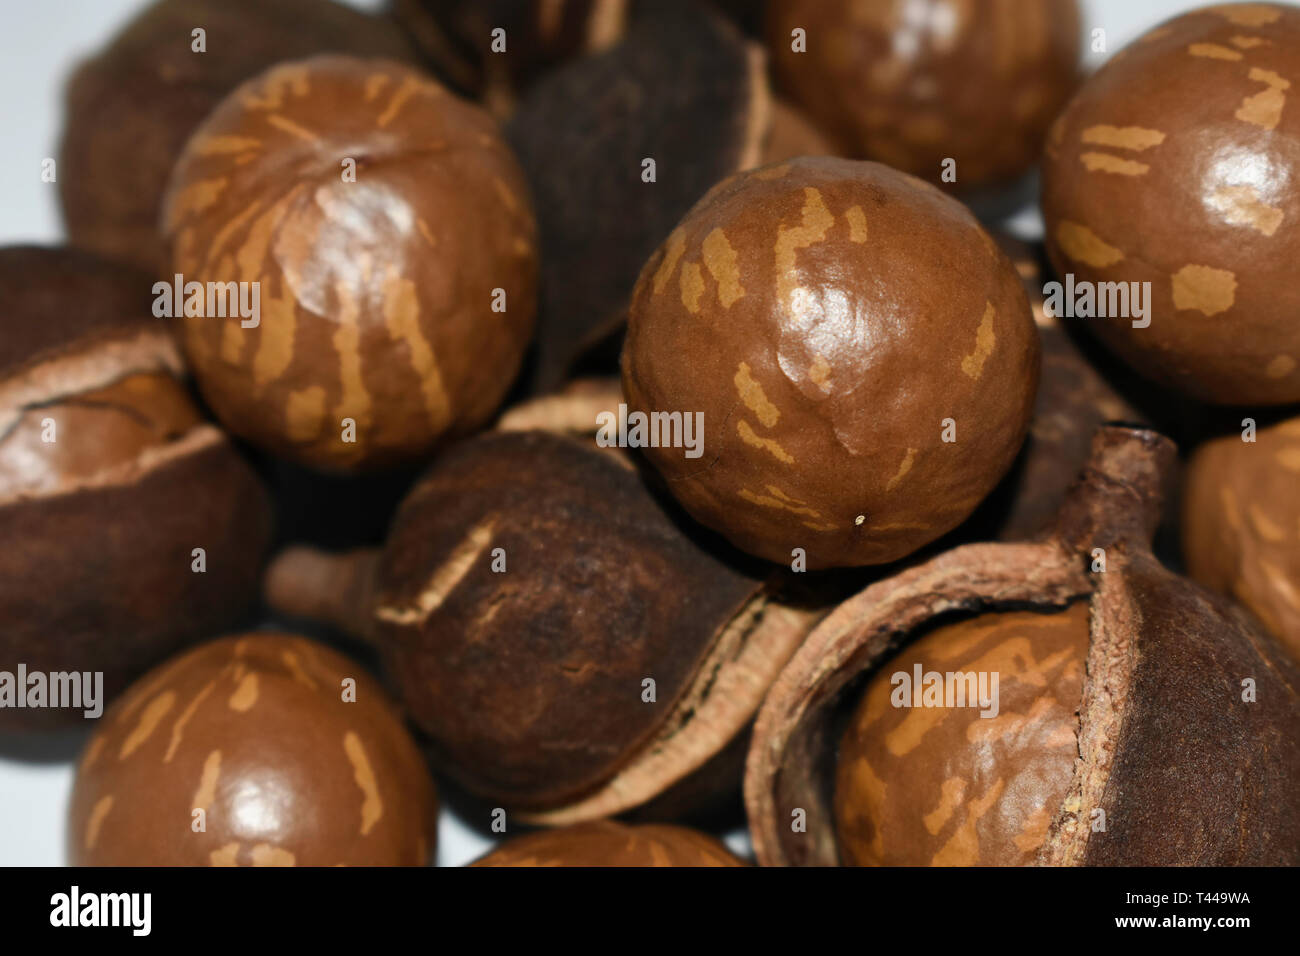 Natürliche Macadamia Nüsse in der Schale und Schale Stockfotografie - Alamy